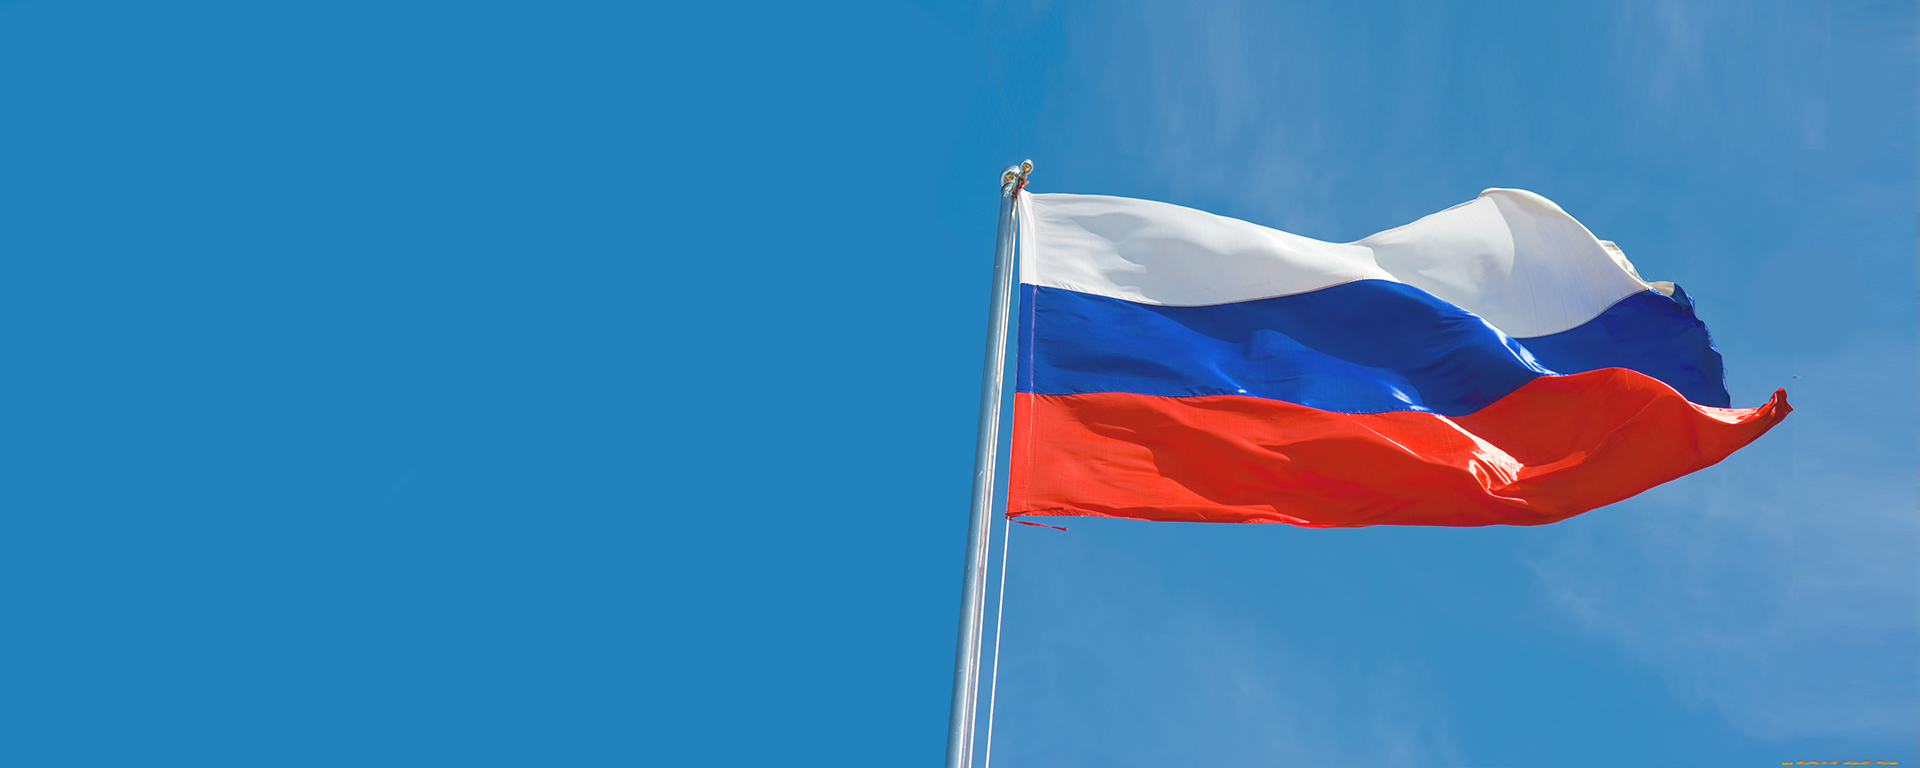 Фон с российским флагом для презентации